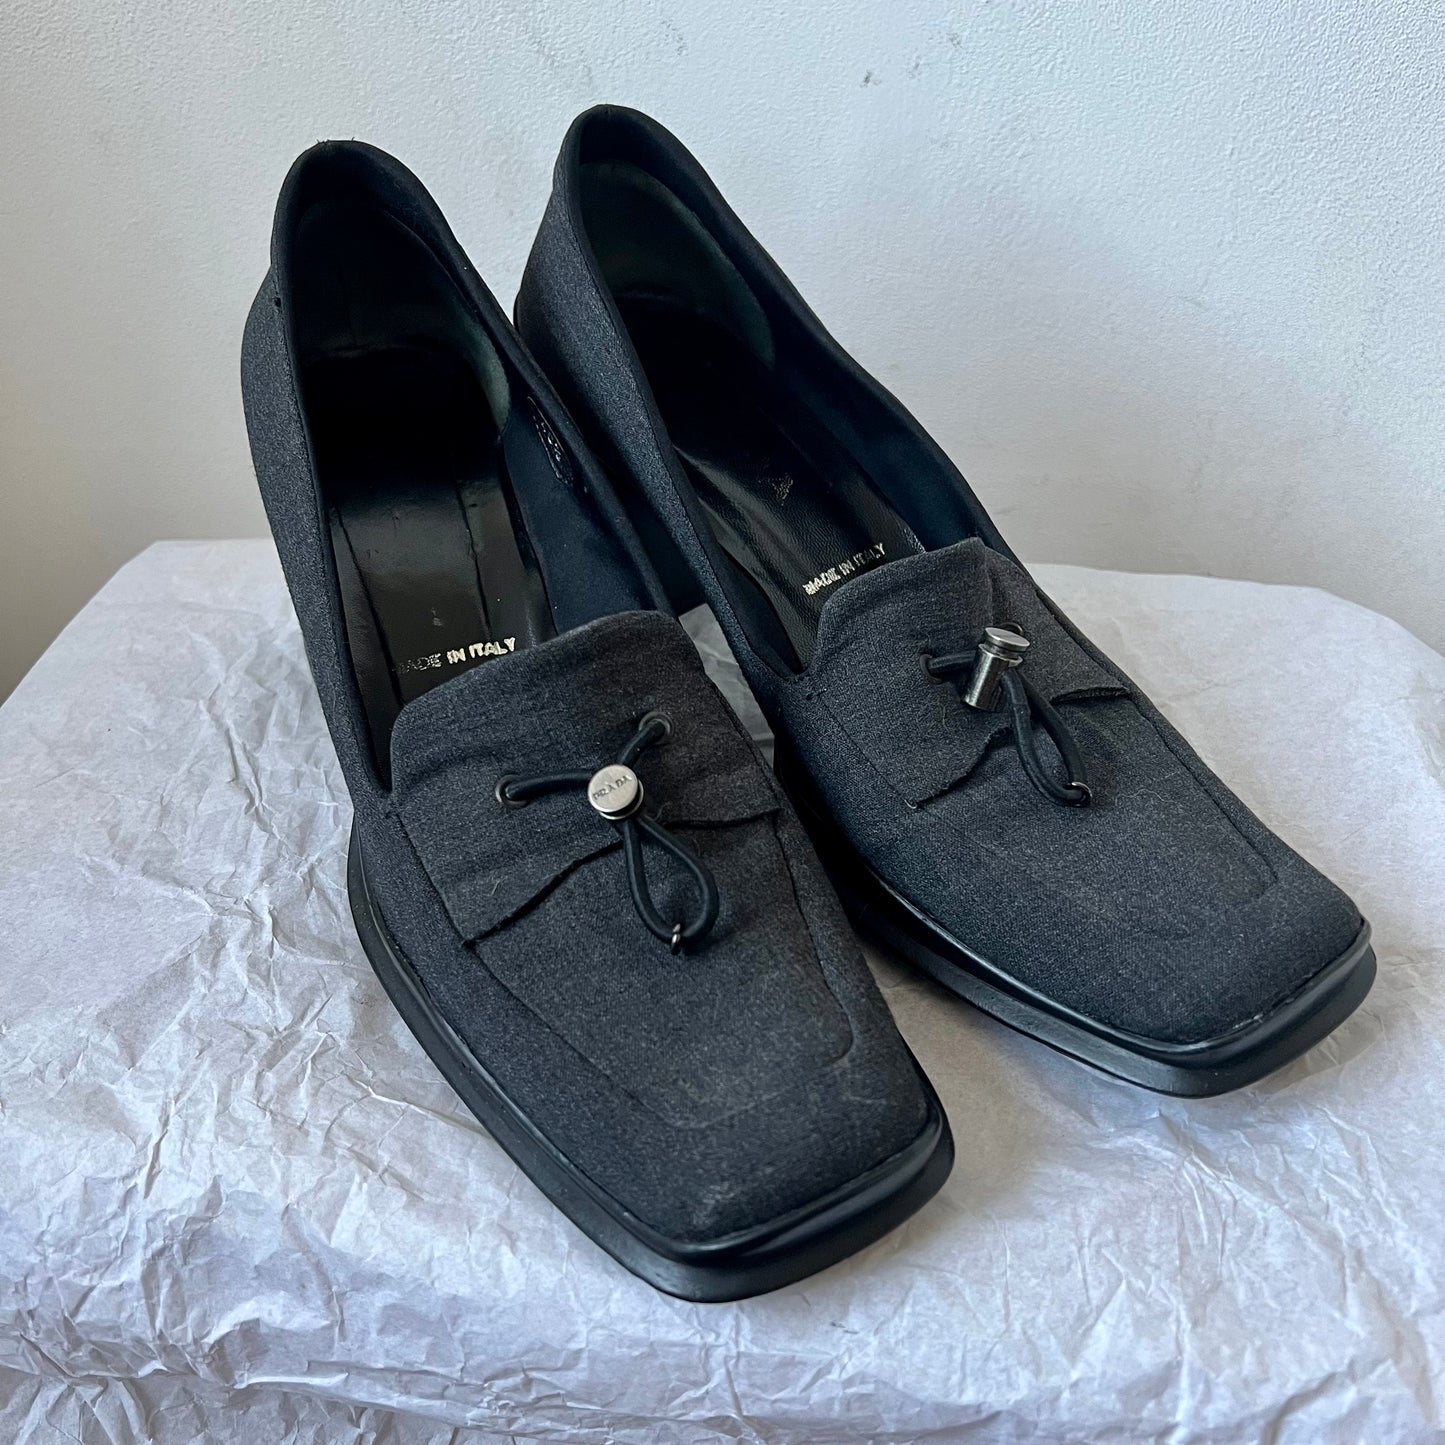 Vintage Prada 1998 loafer heels